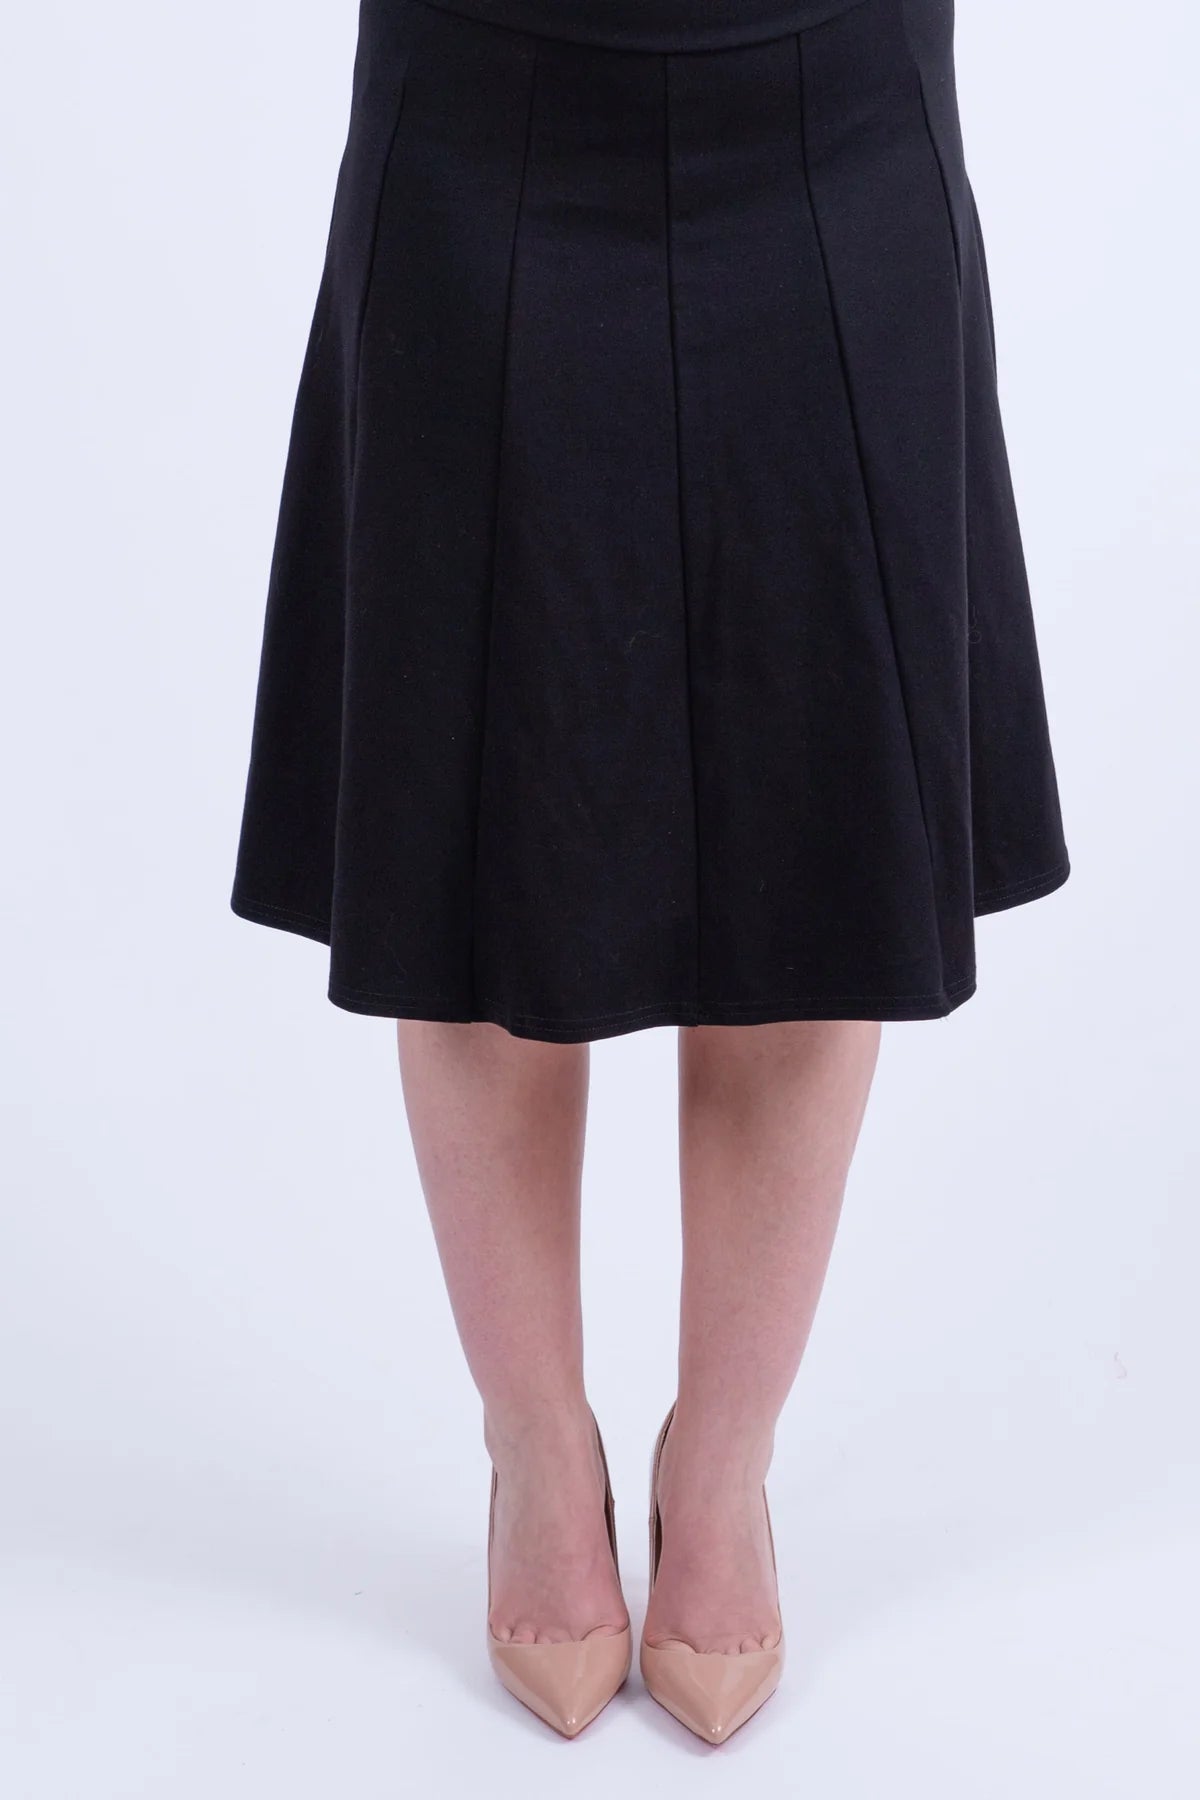 KMW Panel Skirt Black 29" 4829